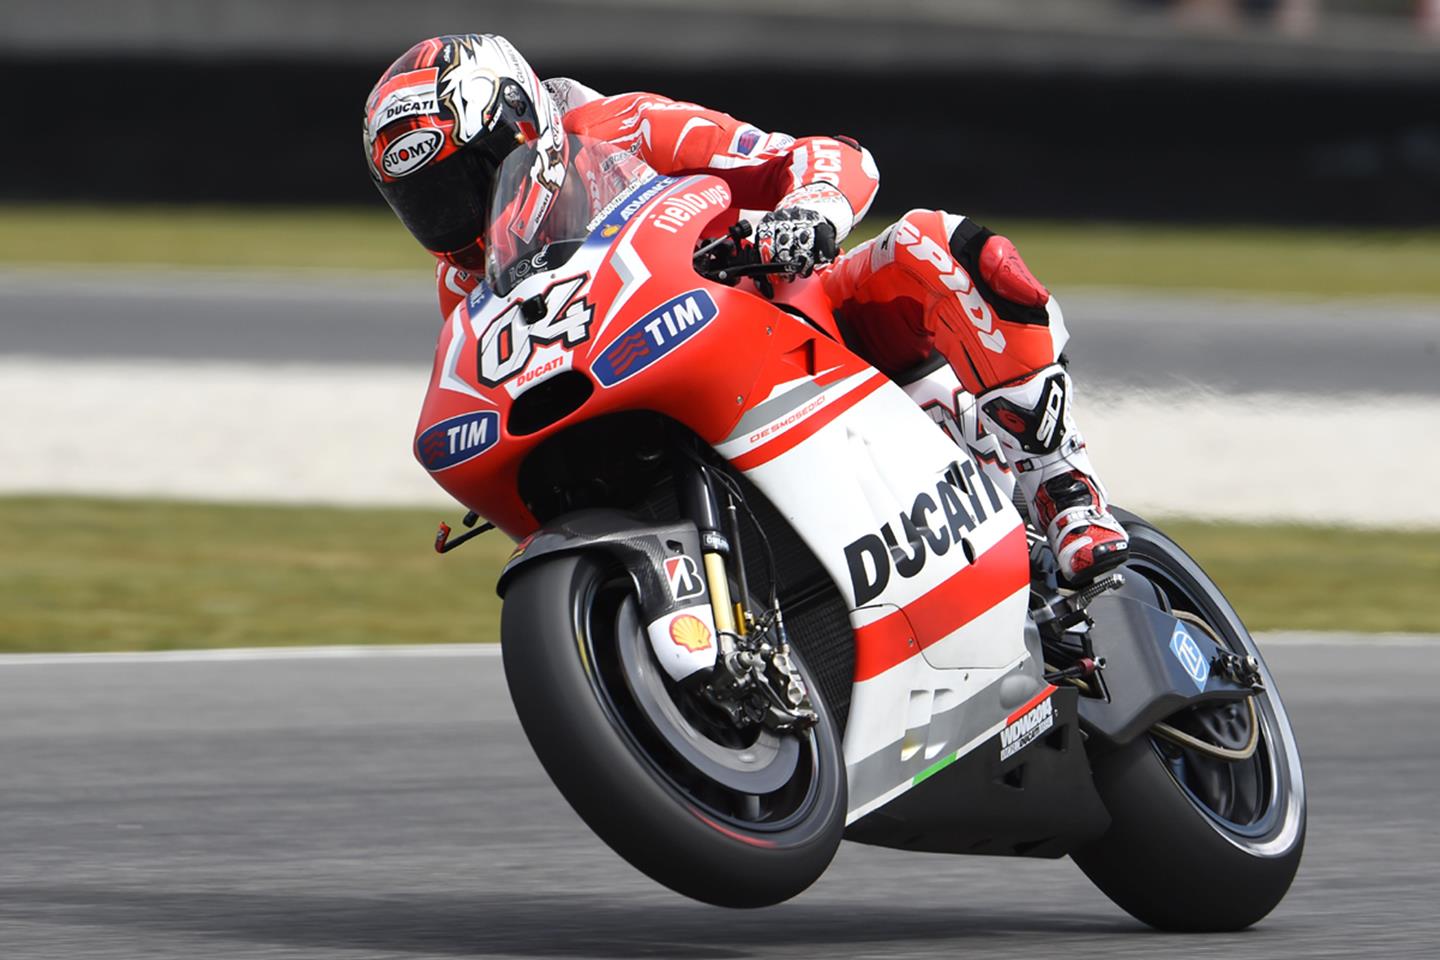 Ducati: Essential to keep Andrea Dovizioso in 2015